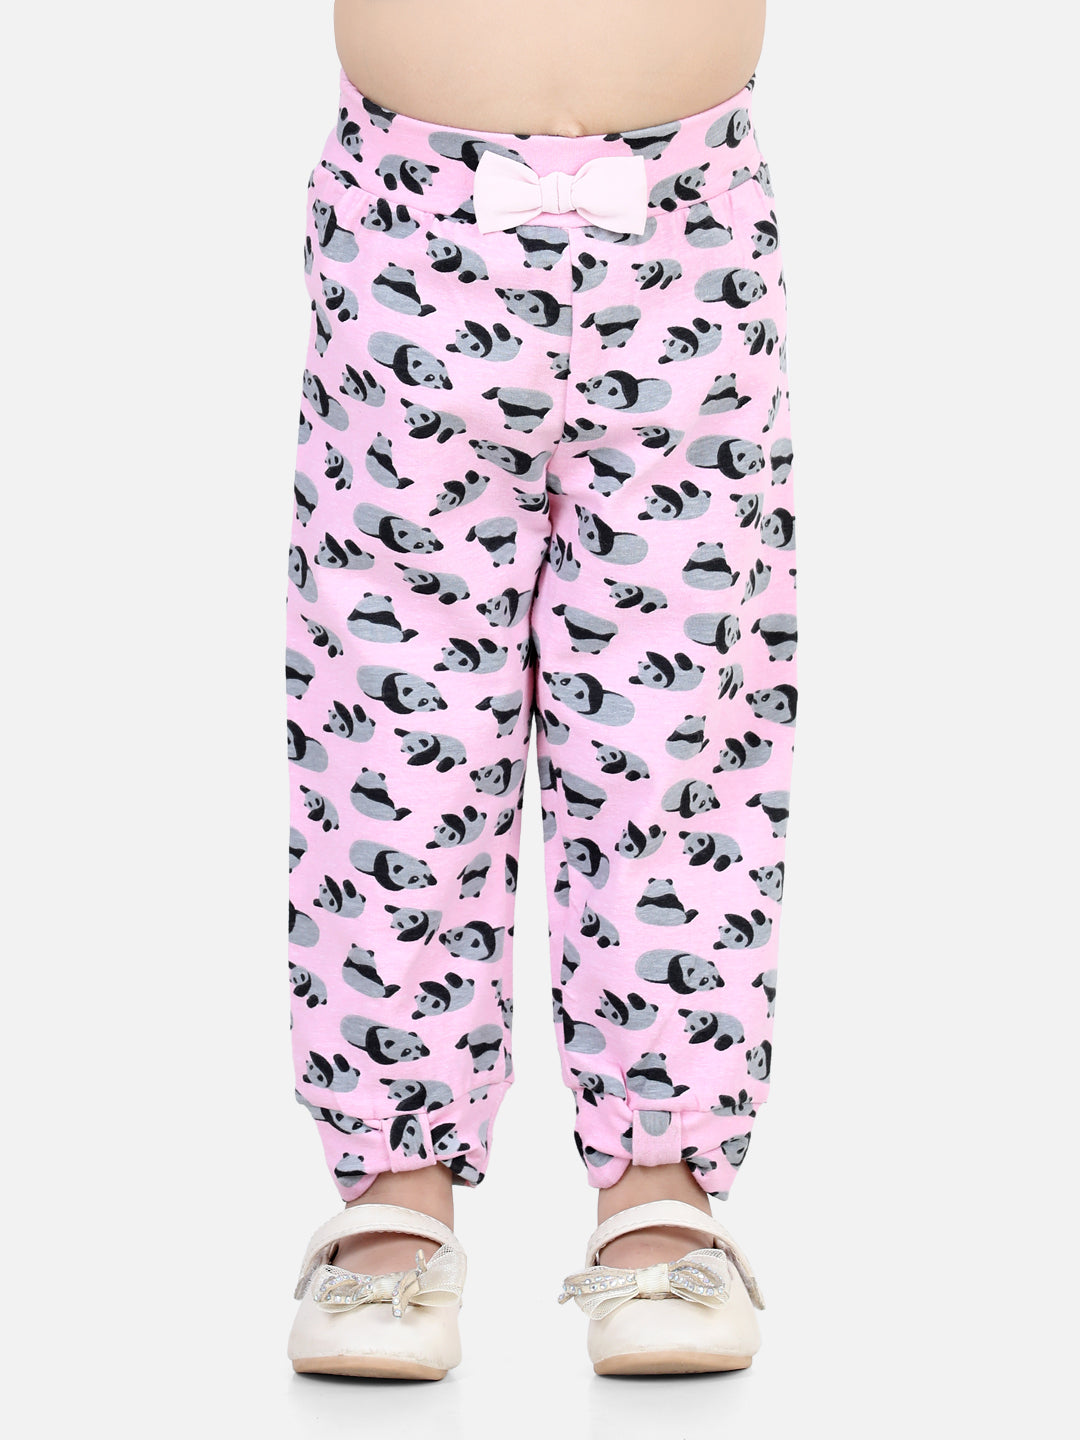 BownBee All Over Panda Printed Leggings - Pink